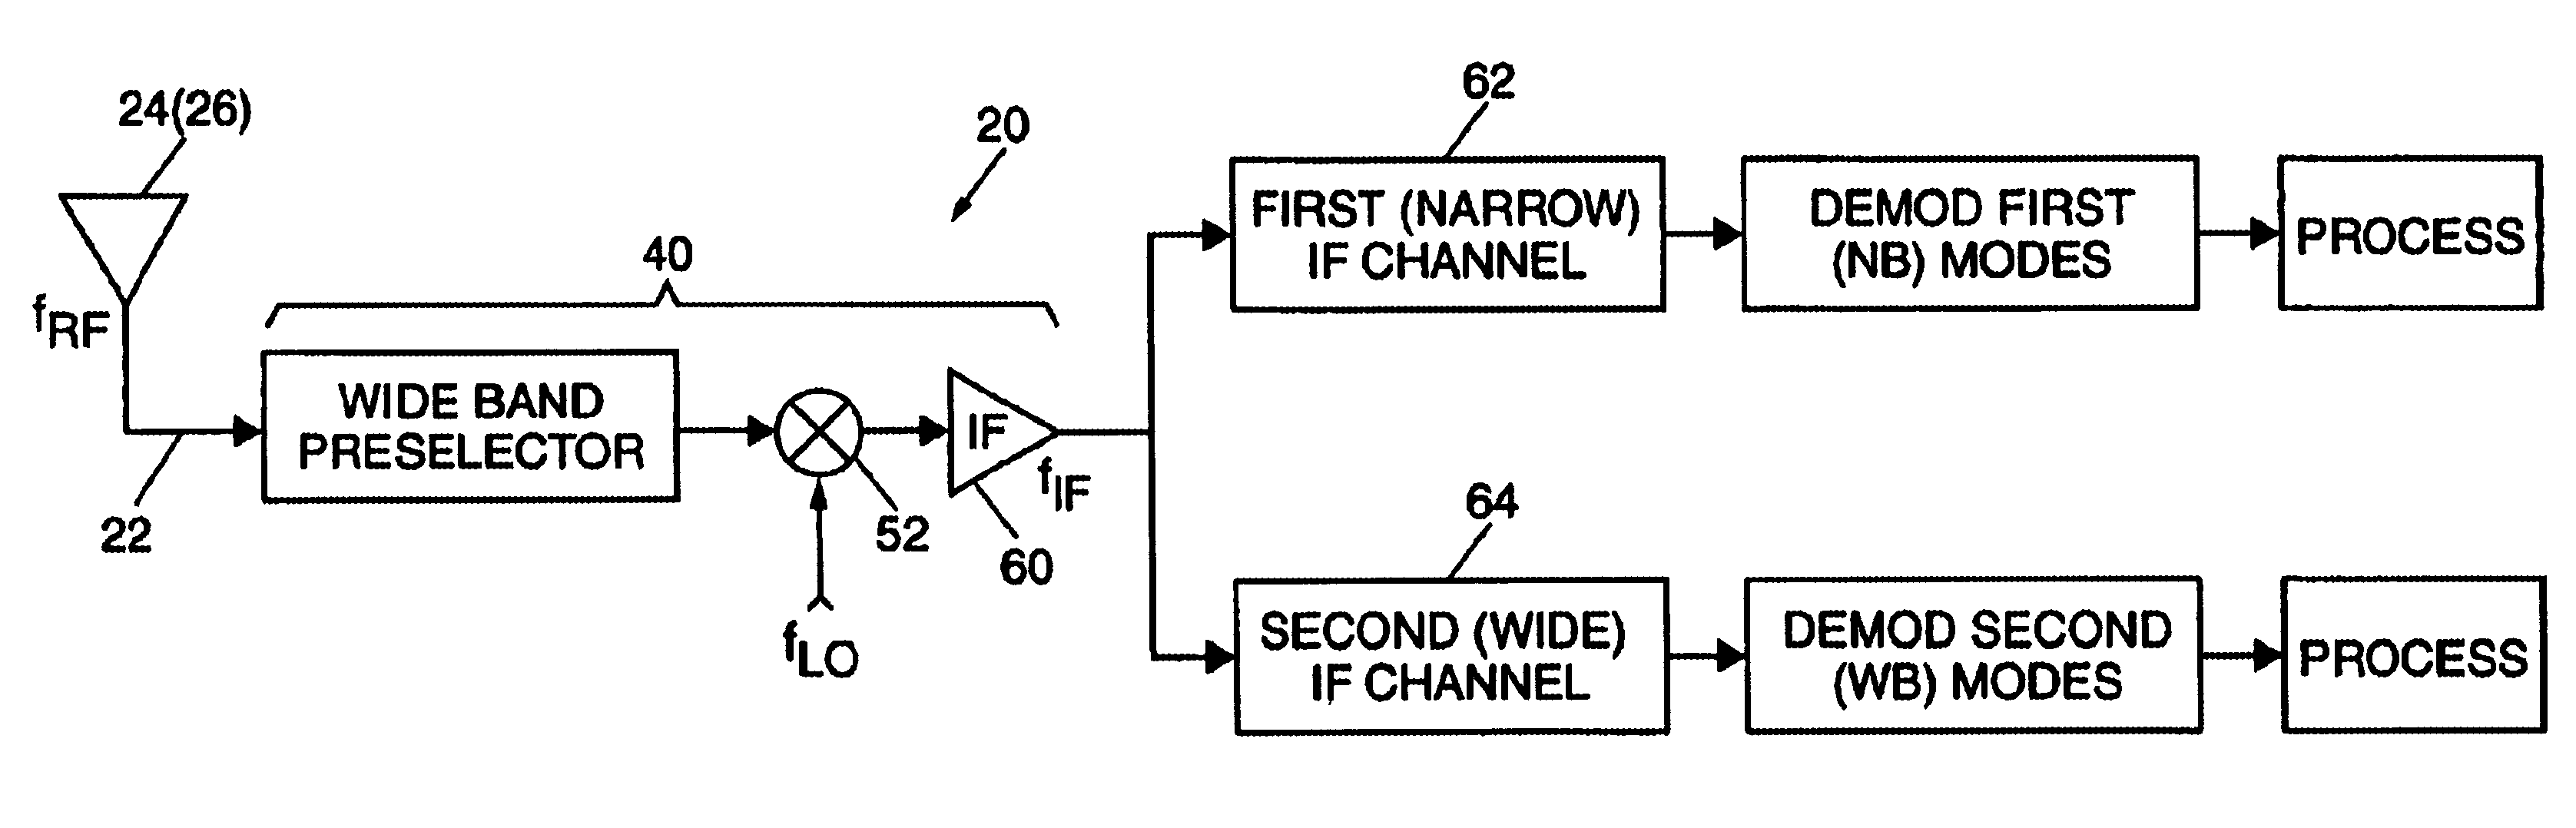 Multi-mode IFF receiver architecture